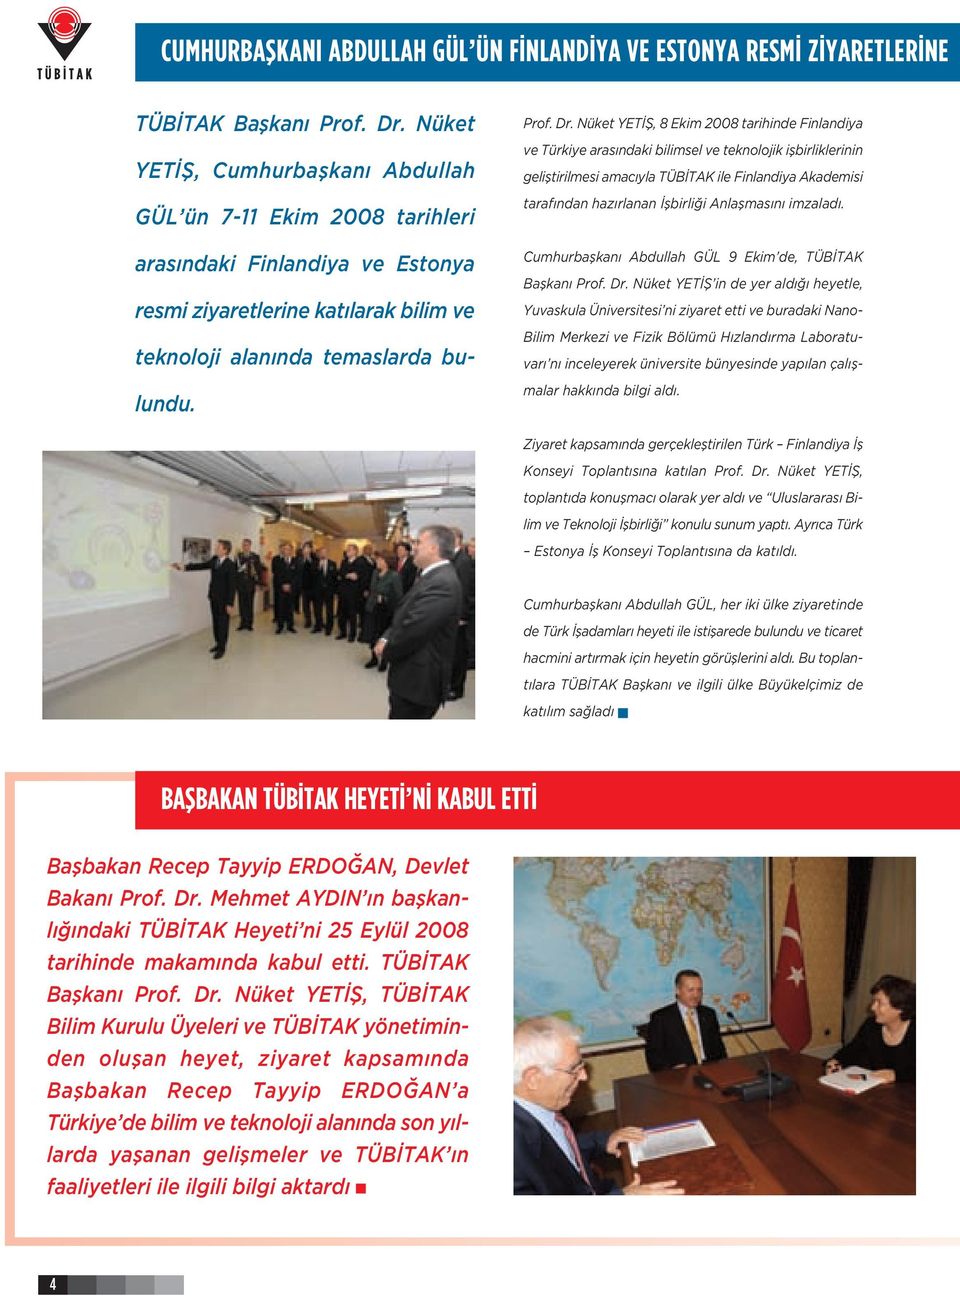 Nüket YETİŞ, 8 Ekim 2008 tarihinde Finlandiya ve Türkiye arasındaki bilimsel ve teknolojik işbirliklerinin geliştirilmesi amacıyla TÜBİTAK ile Finlandiya Akademisi tarafından hazırlanan İşbirliği